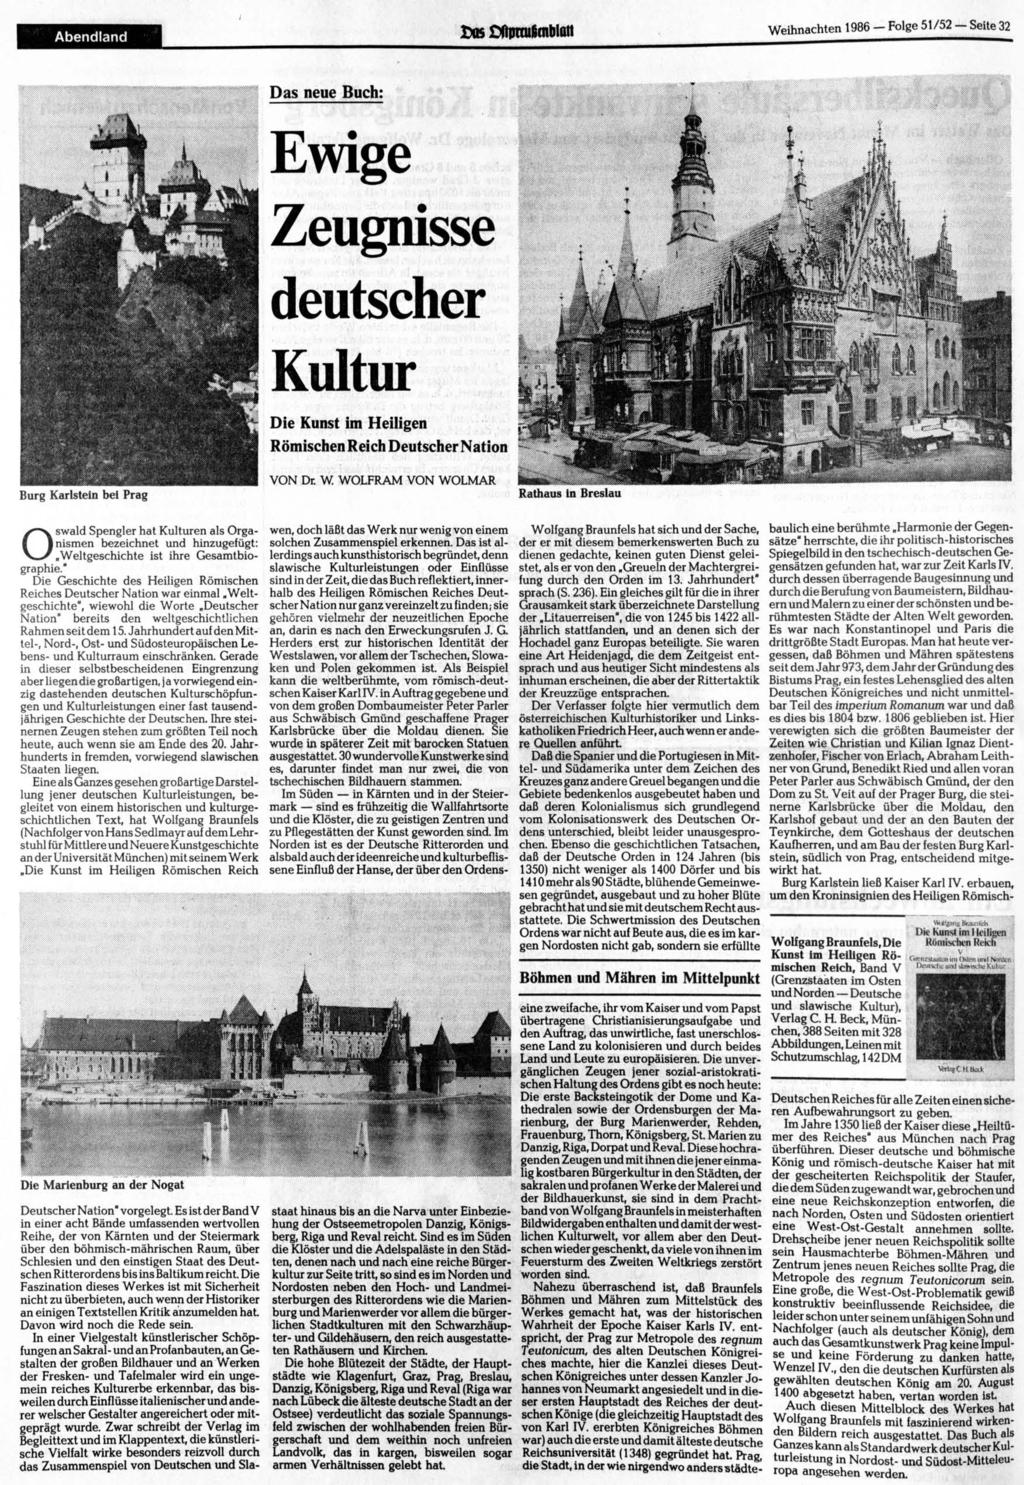 Abendland ilcnblatt Weihnachten 1986 Folge 51 52 Seite 32 Das neue Buch Ewige